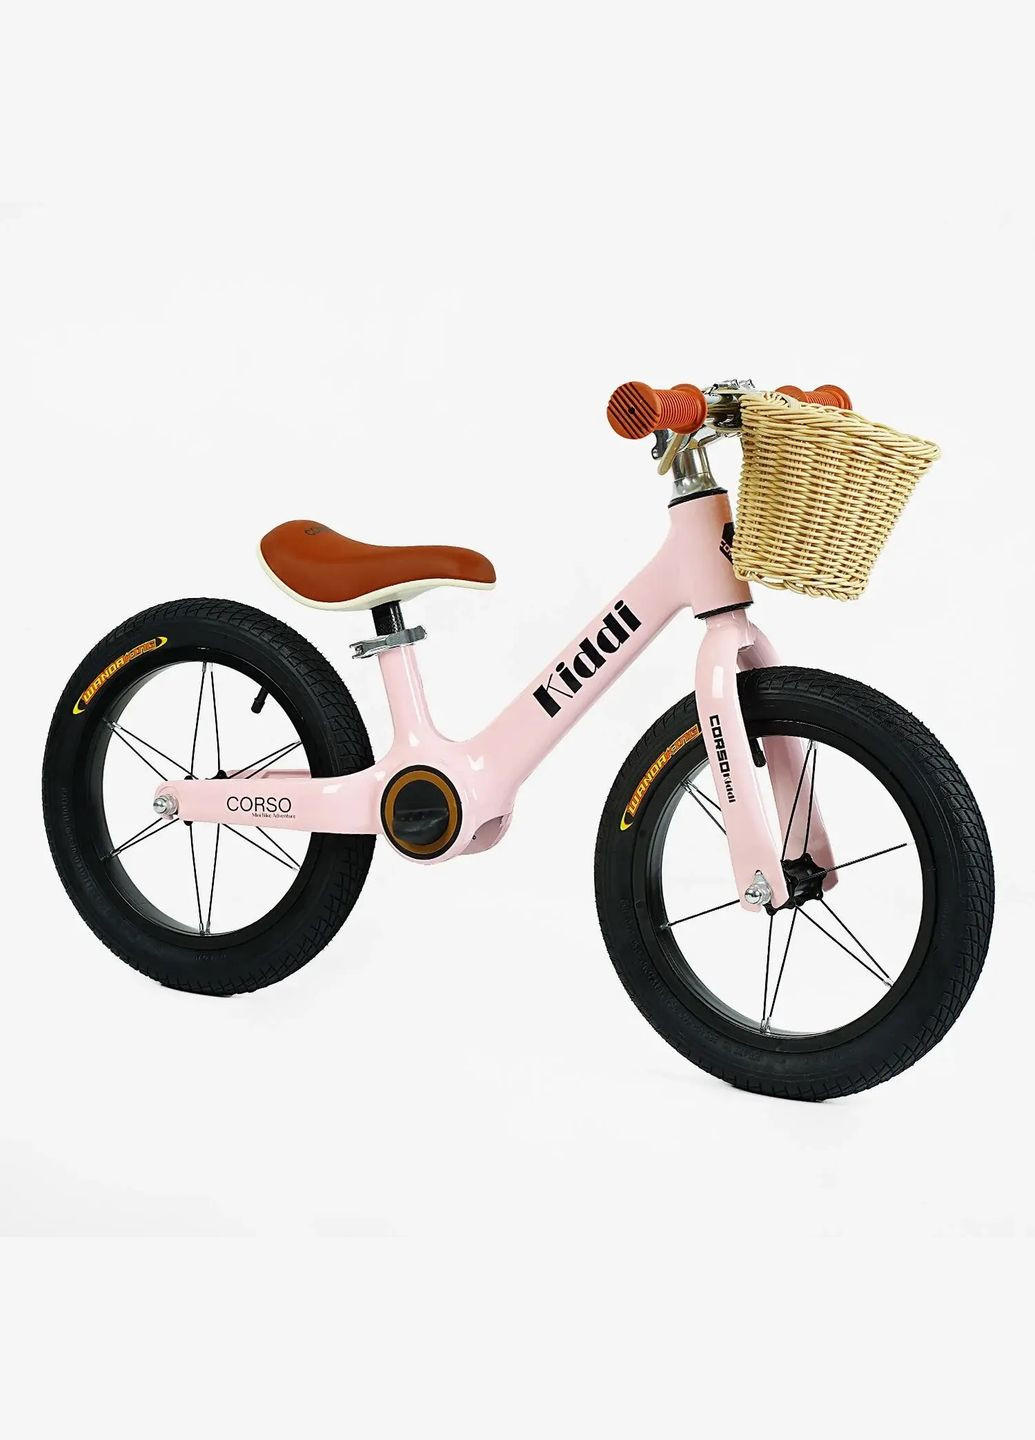 Детский велобег KIDDI LT-14055. Магниевая рама, надувные колеса 14", подставка для ног, корзина Corso (290254804)